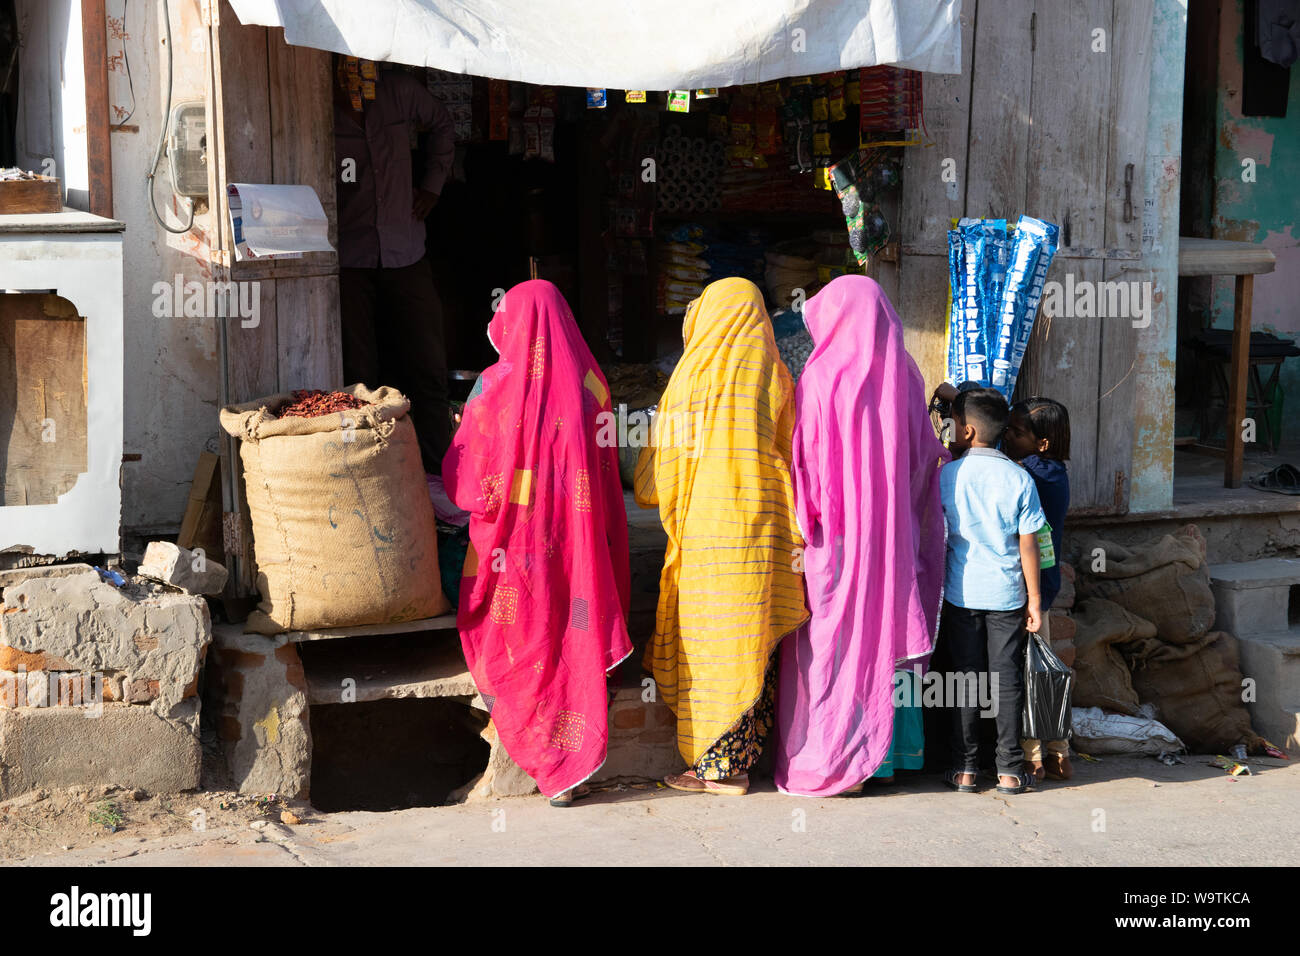 Drei Frauen vor einem bunten en Saris Geschäft stehend (Rücken zur Kamera), zwei Kinder stehen ihnen neben. Straßenszene dans Mandawa (Rajasthan) dans Ind Banque D'Images